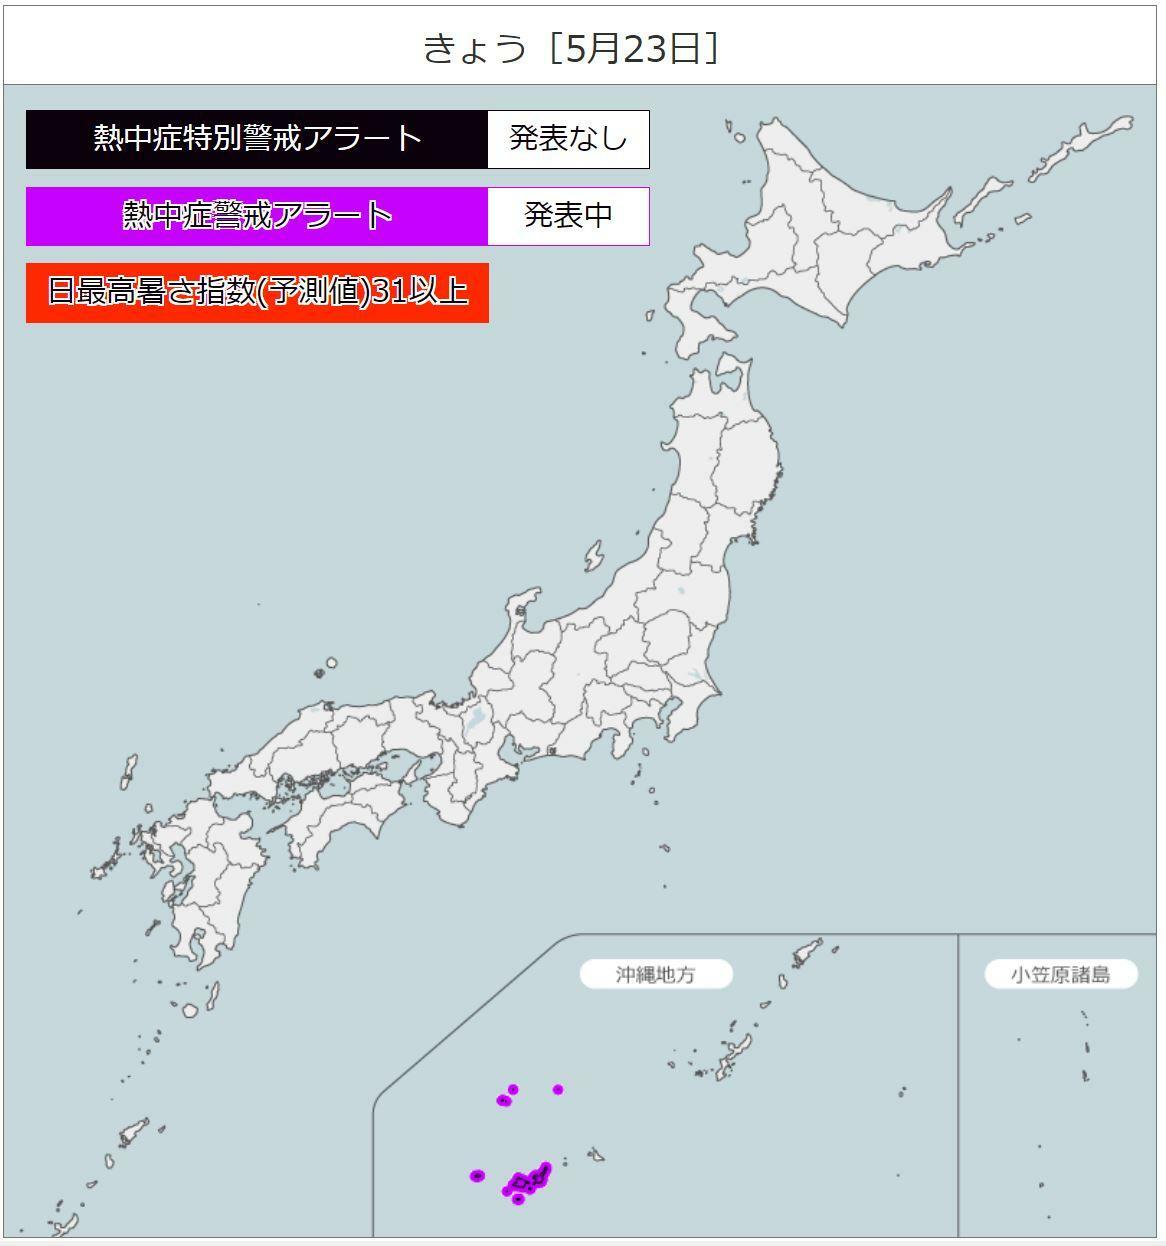 熱中症警戒アラート（環境省HPより）。沖縄の八重山地方に紫色の「熱中症警戒アラート」が発表中。